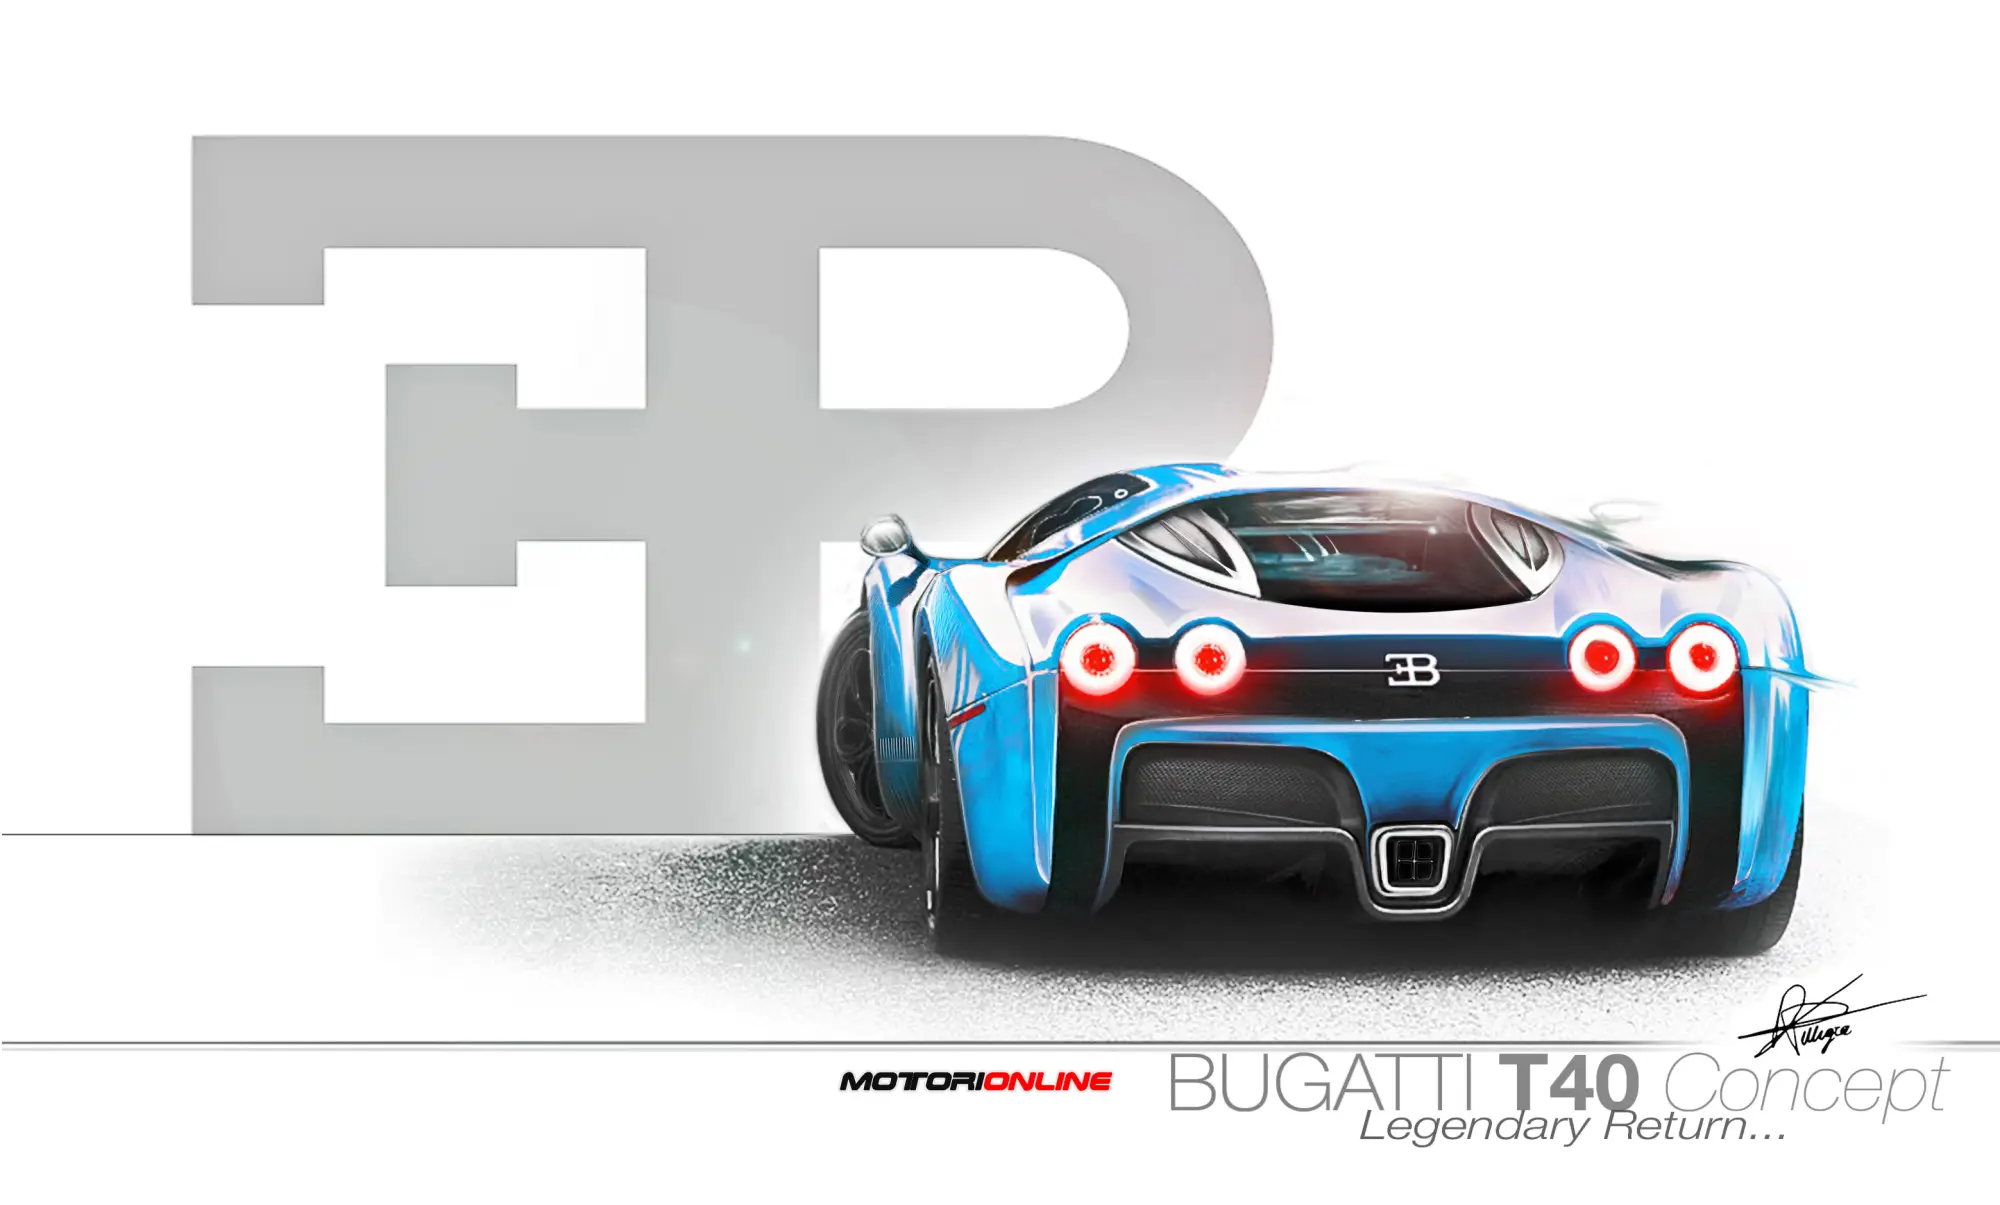 Bugatti Ettore T40 Concept by Daniele Pelligra - 2